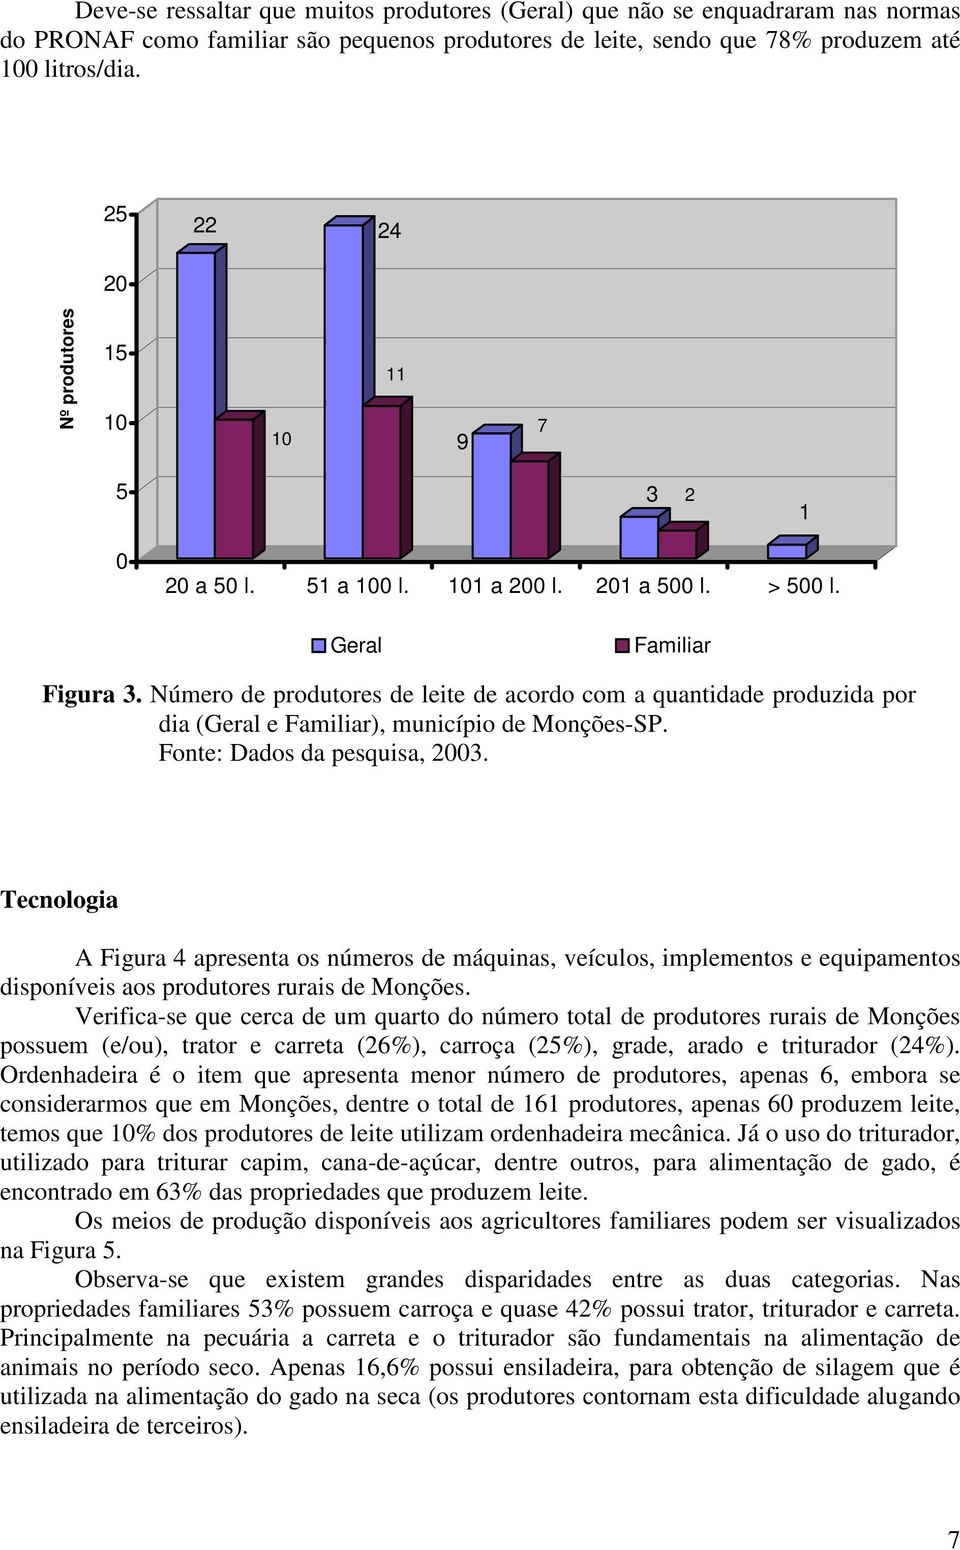 Número de produtores de leite de acordo com a quantidade produzida por dia (Geral e Familiar), município de Monções-SP. Fonte: Dados da pesquisa, 2003.